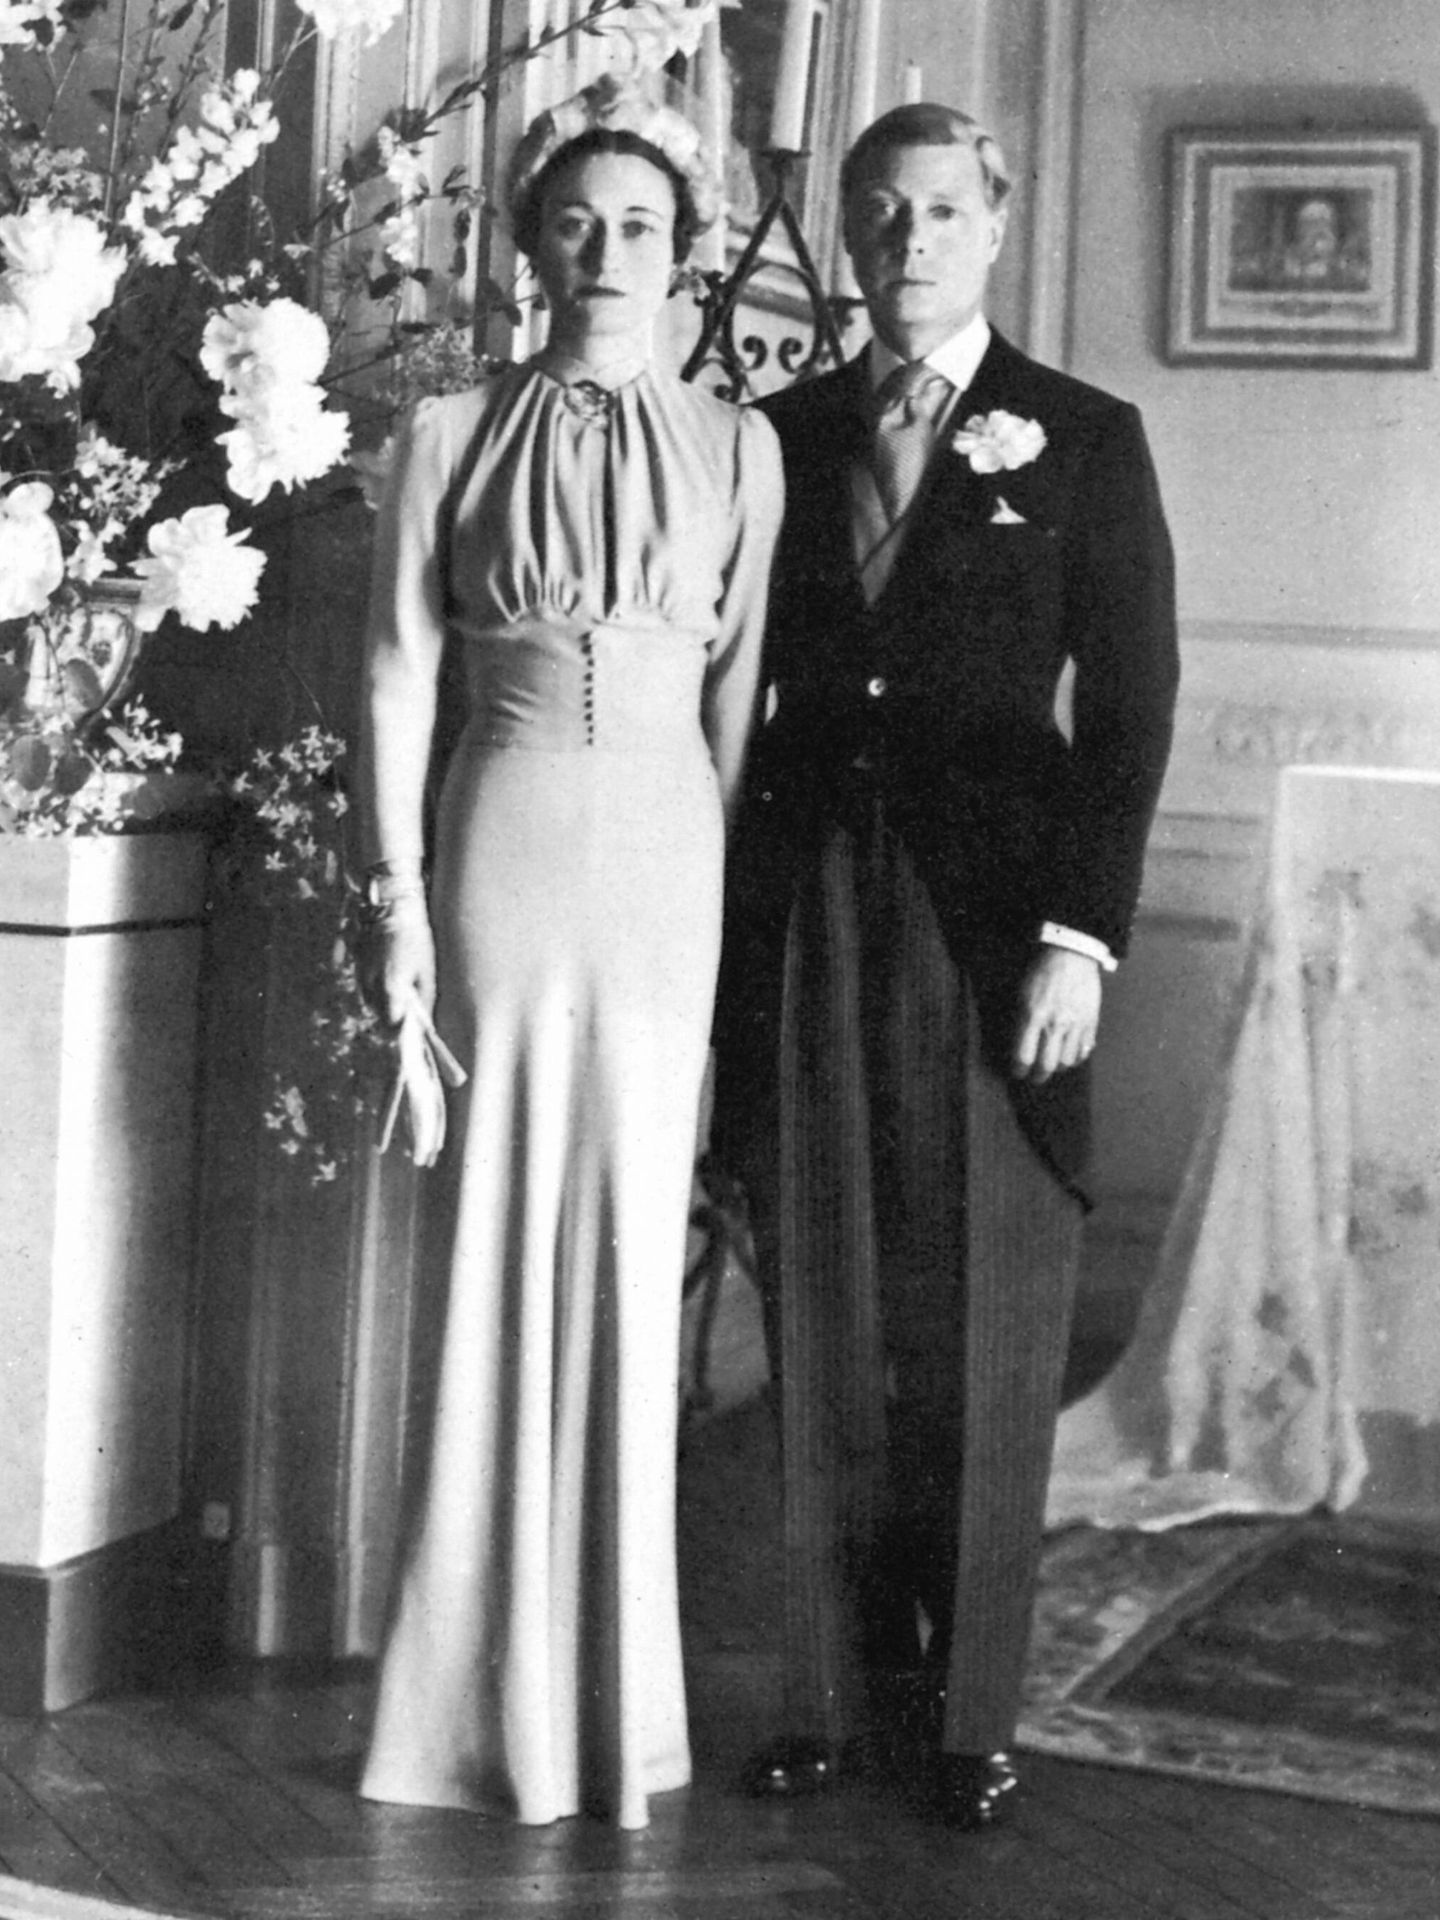 La boda del exrey Eduardo VIII y Wallis Simpson. (Cordon Press)